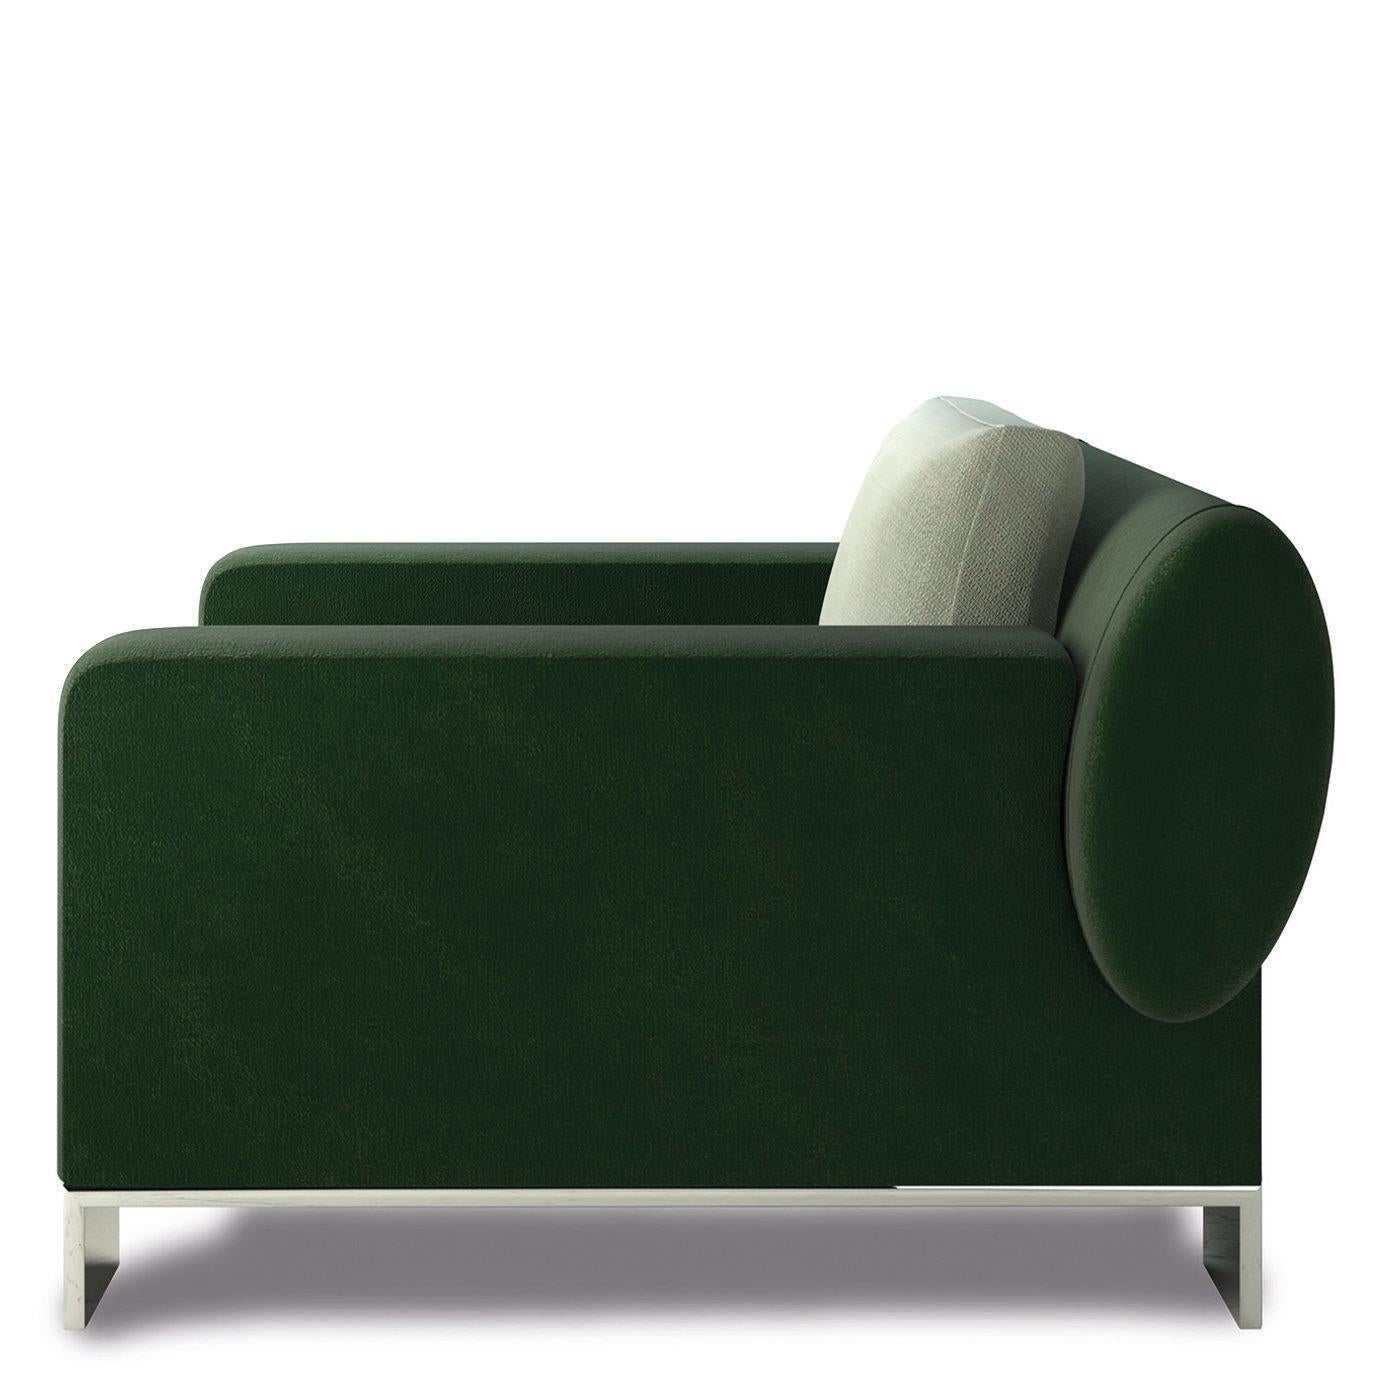 Exquisément conçu par Giannella Ventura pour un intérieur contemporain élégant, ce magnifique fauteuil porte le nom du peintre abstrait Jackson Pollock. Présentant des lignes épurées et essentielles qui contrastent de manière unique avec les coups